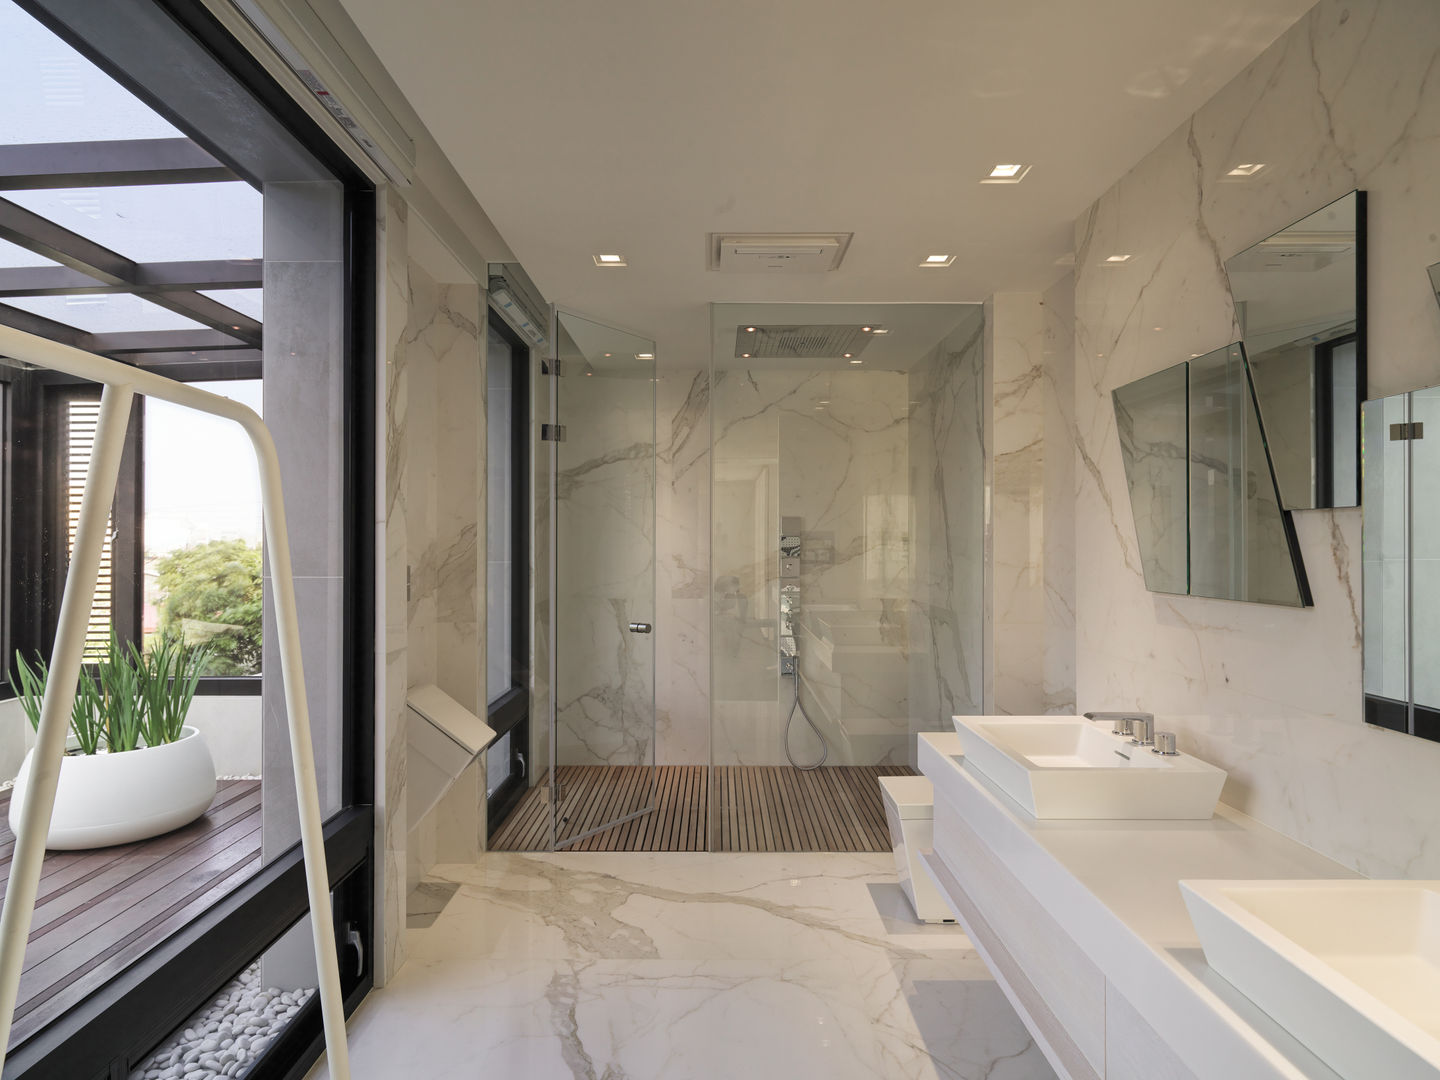 2015 TID 台灣室內設計大獎 /居住空間 /複層, HJF建築室內設計 Ho Jia-fu Interior Design Co., Ltd. HJF建築室內設計 Ho Jia-fu Interior Design Co., Ltd. Modern bathroom Marble